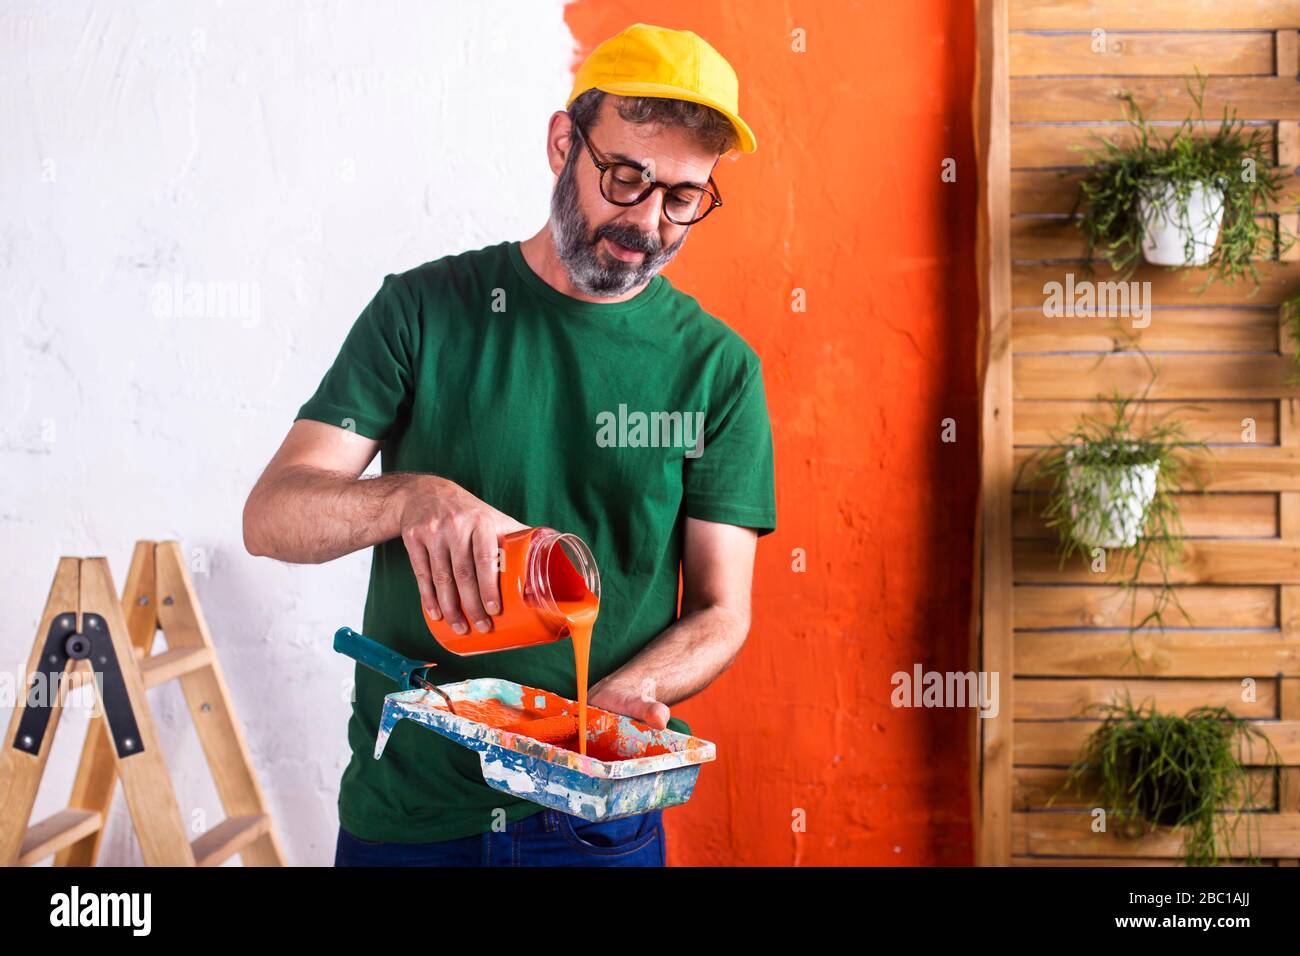 Uomo che versa vernice arancione nel vassoio di vernice Foto Stock